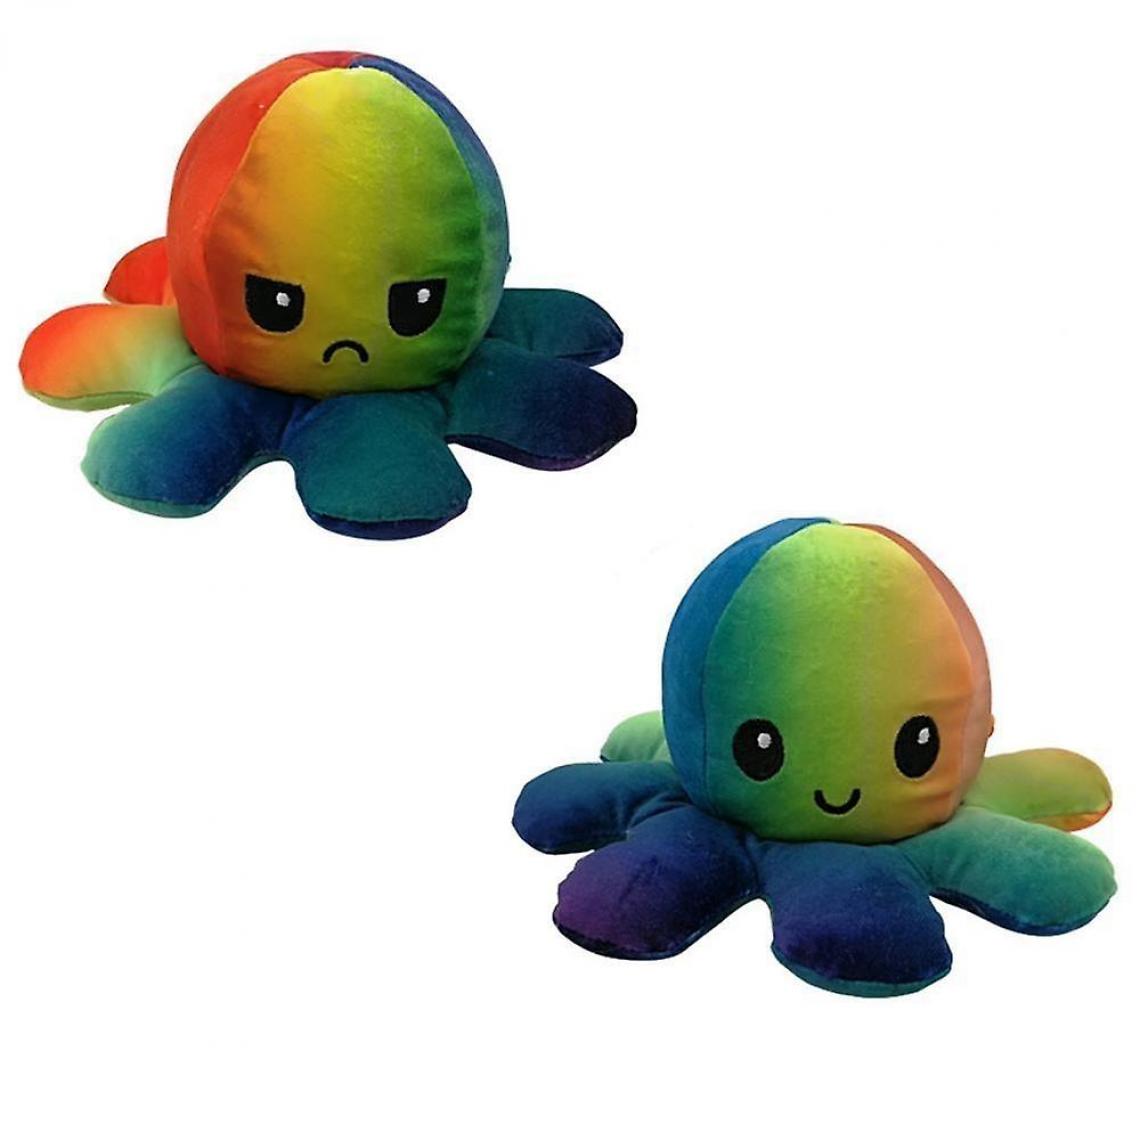 Universal - Peluche flip mignonne poupée en peluche, jouet réversible émulation douce (multicolore) - Doudous